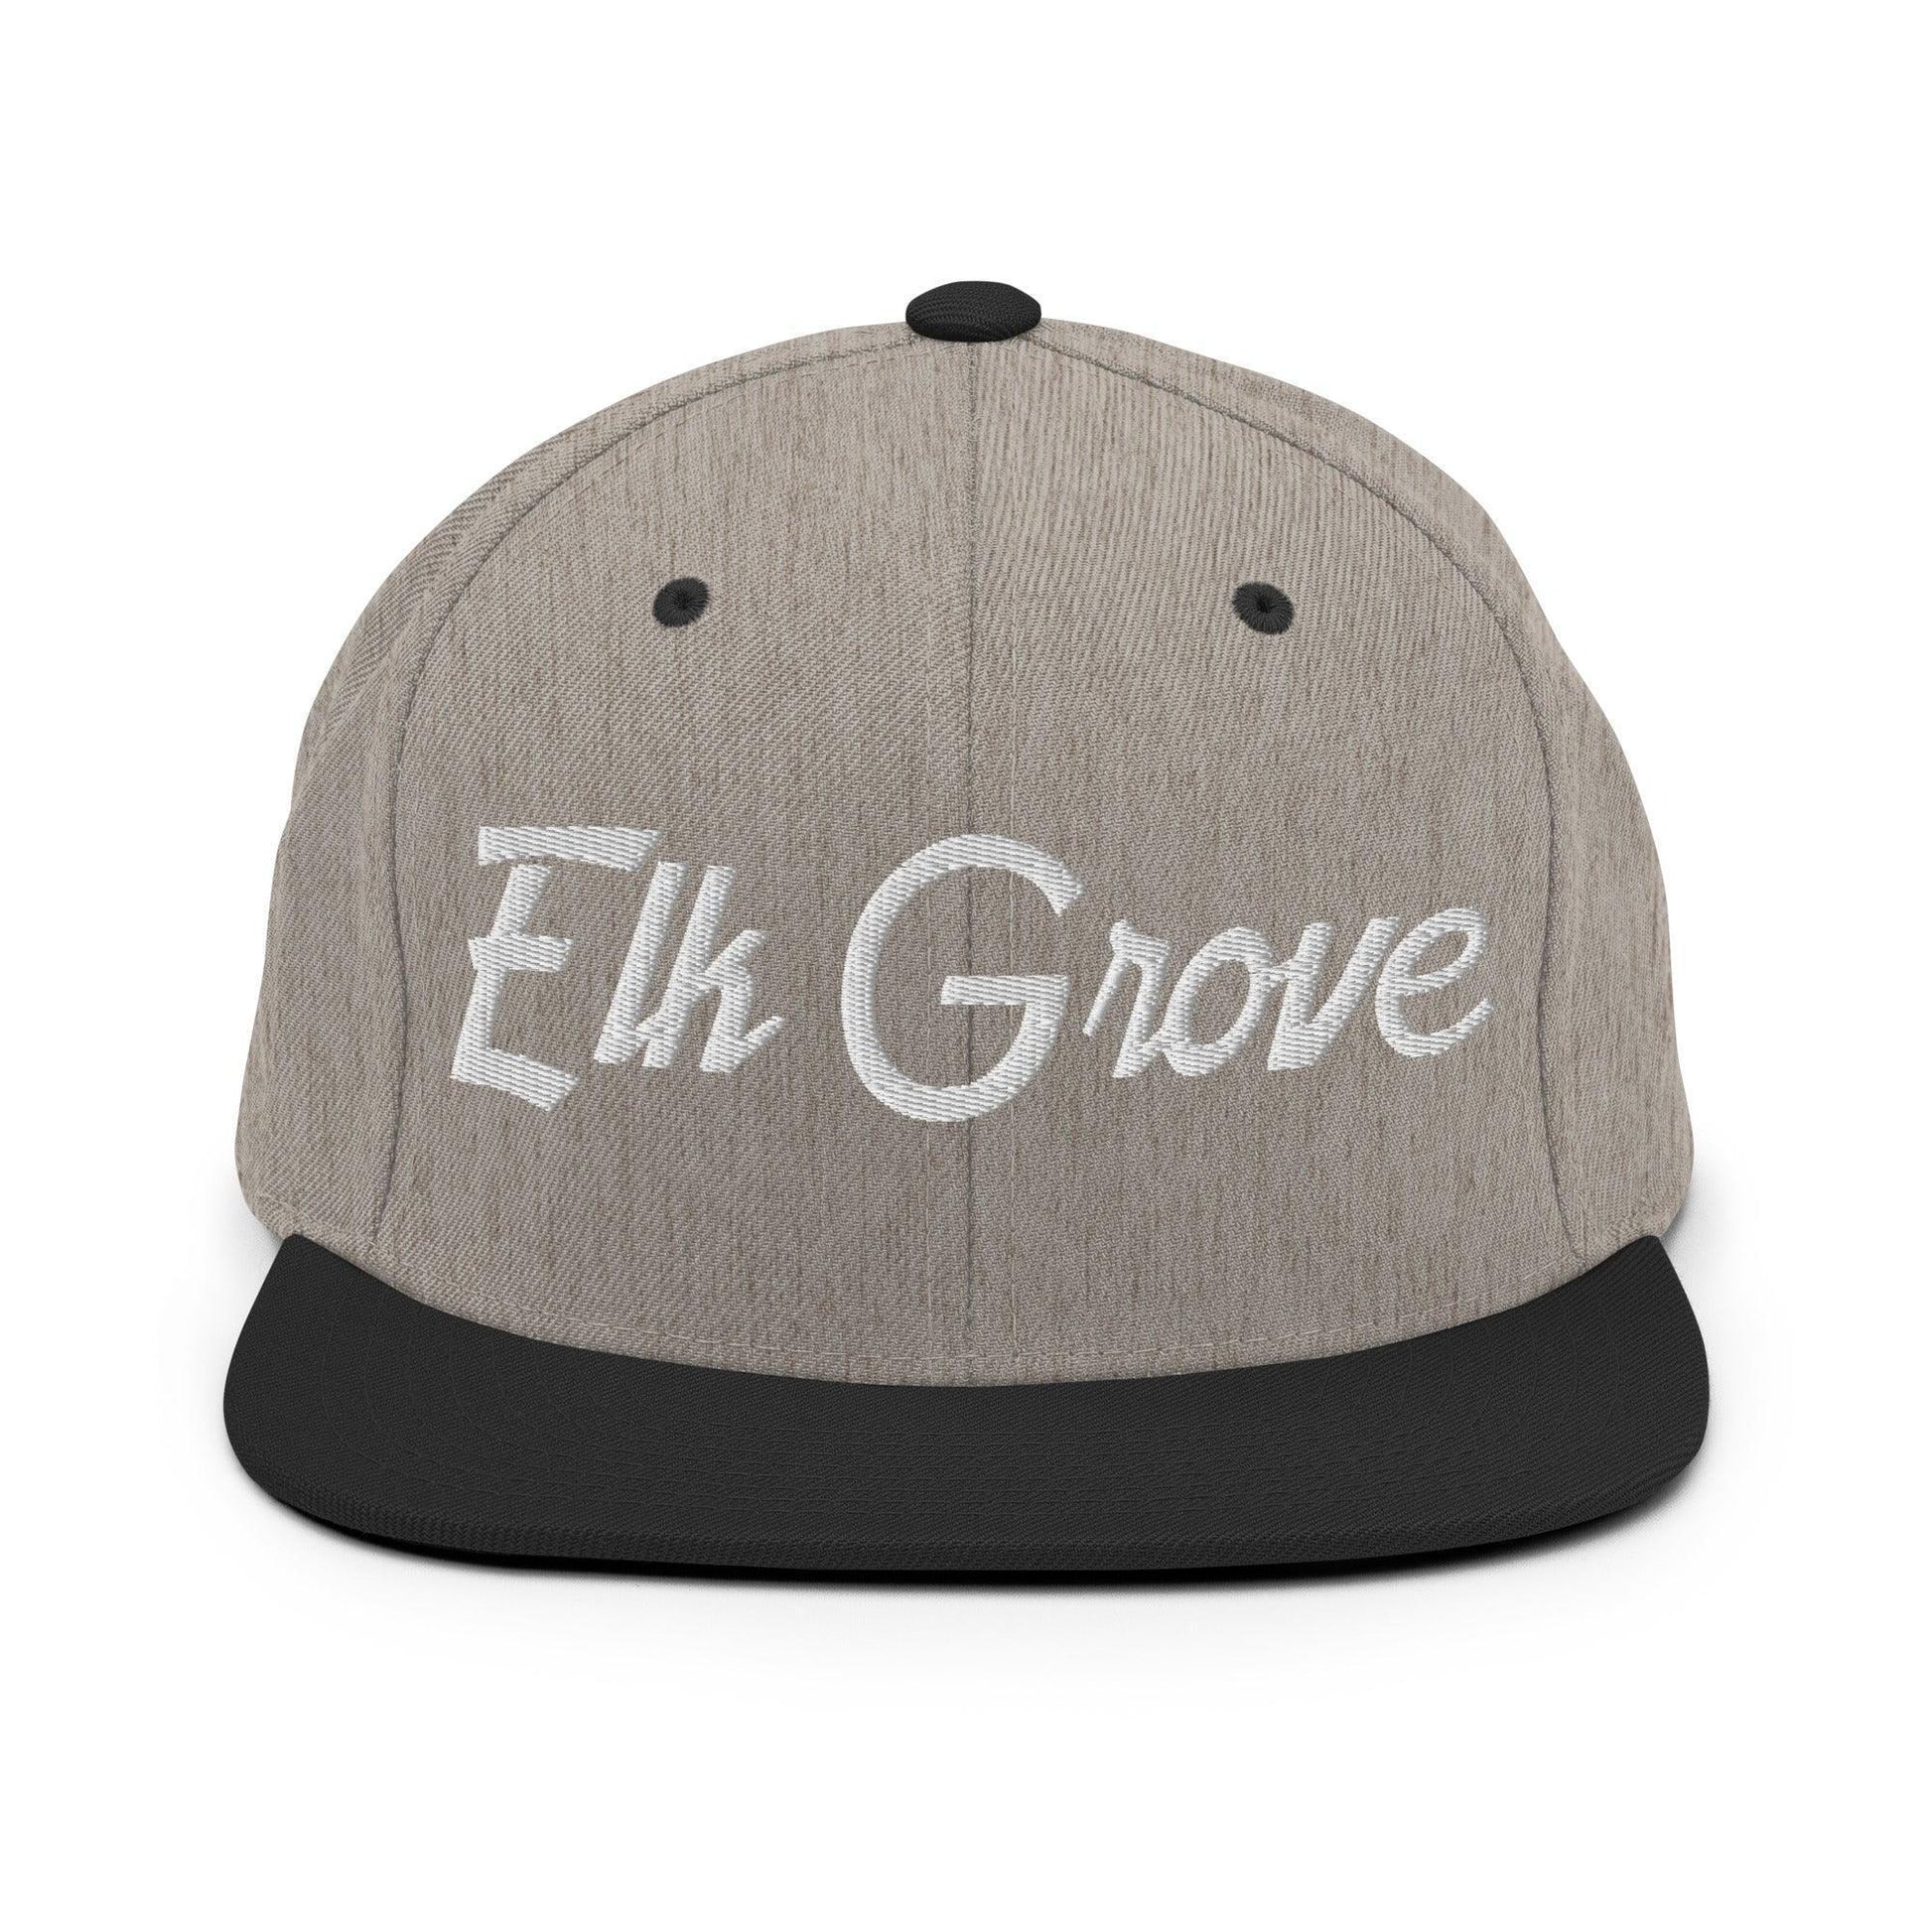 Elk Grove Script Snapback Hat Heather/Black